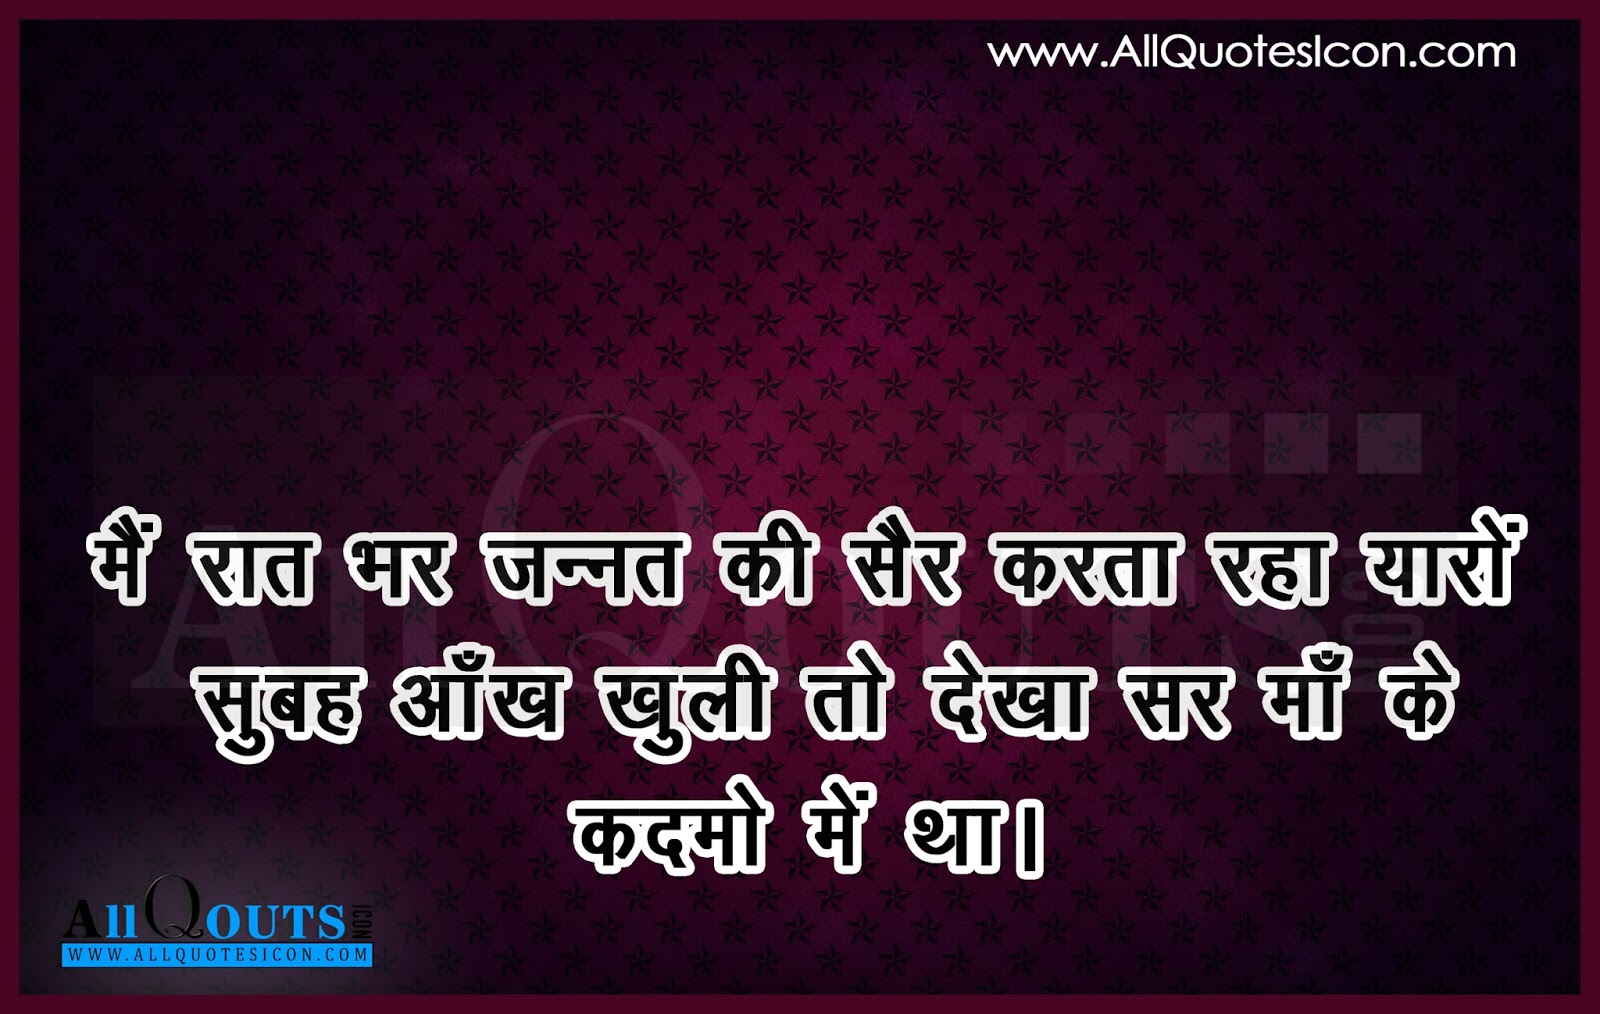 Hindi Quotes Life Quotes in Hindi 10 58 00 PM